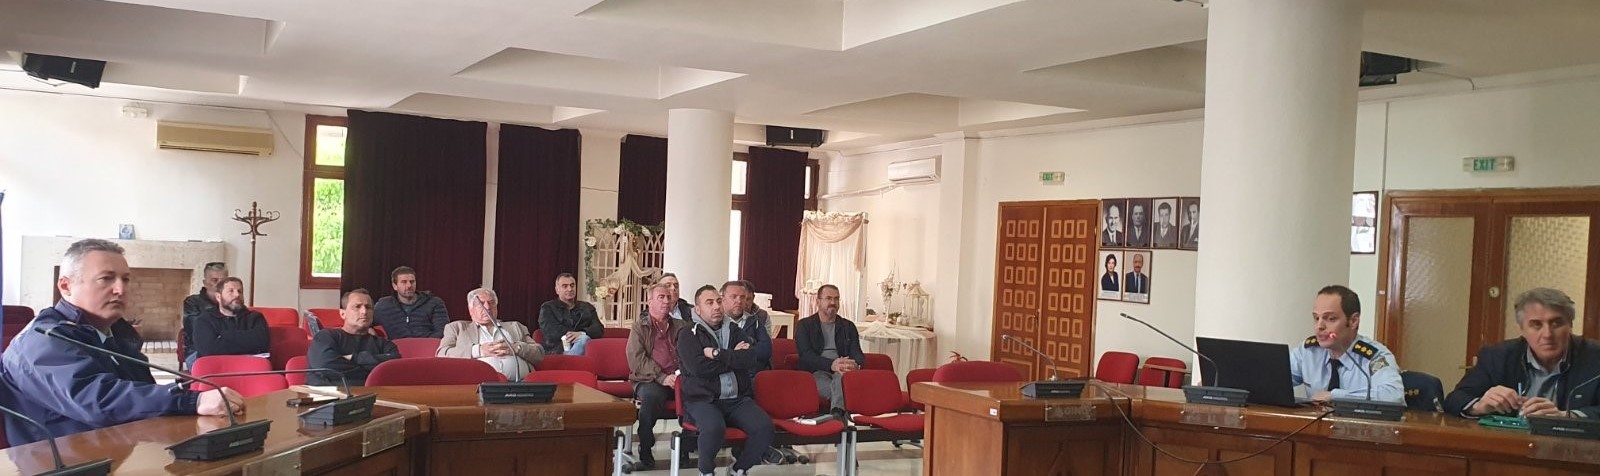 Διάλεξη από τη Δ/νση Αστυνομίας Κοζάνης με θέμα «Απάτες σε βάρος πολιτών και συμβουλές για την αποφυγή εξαπάτησης τους»